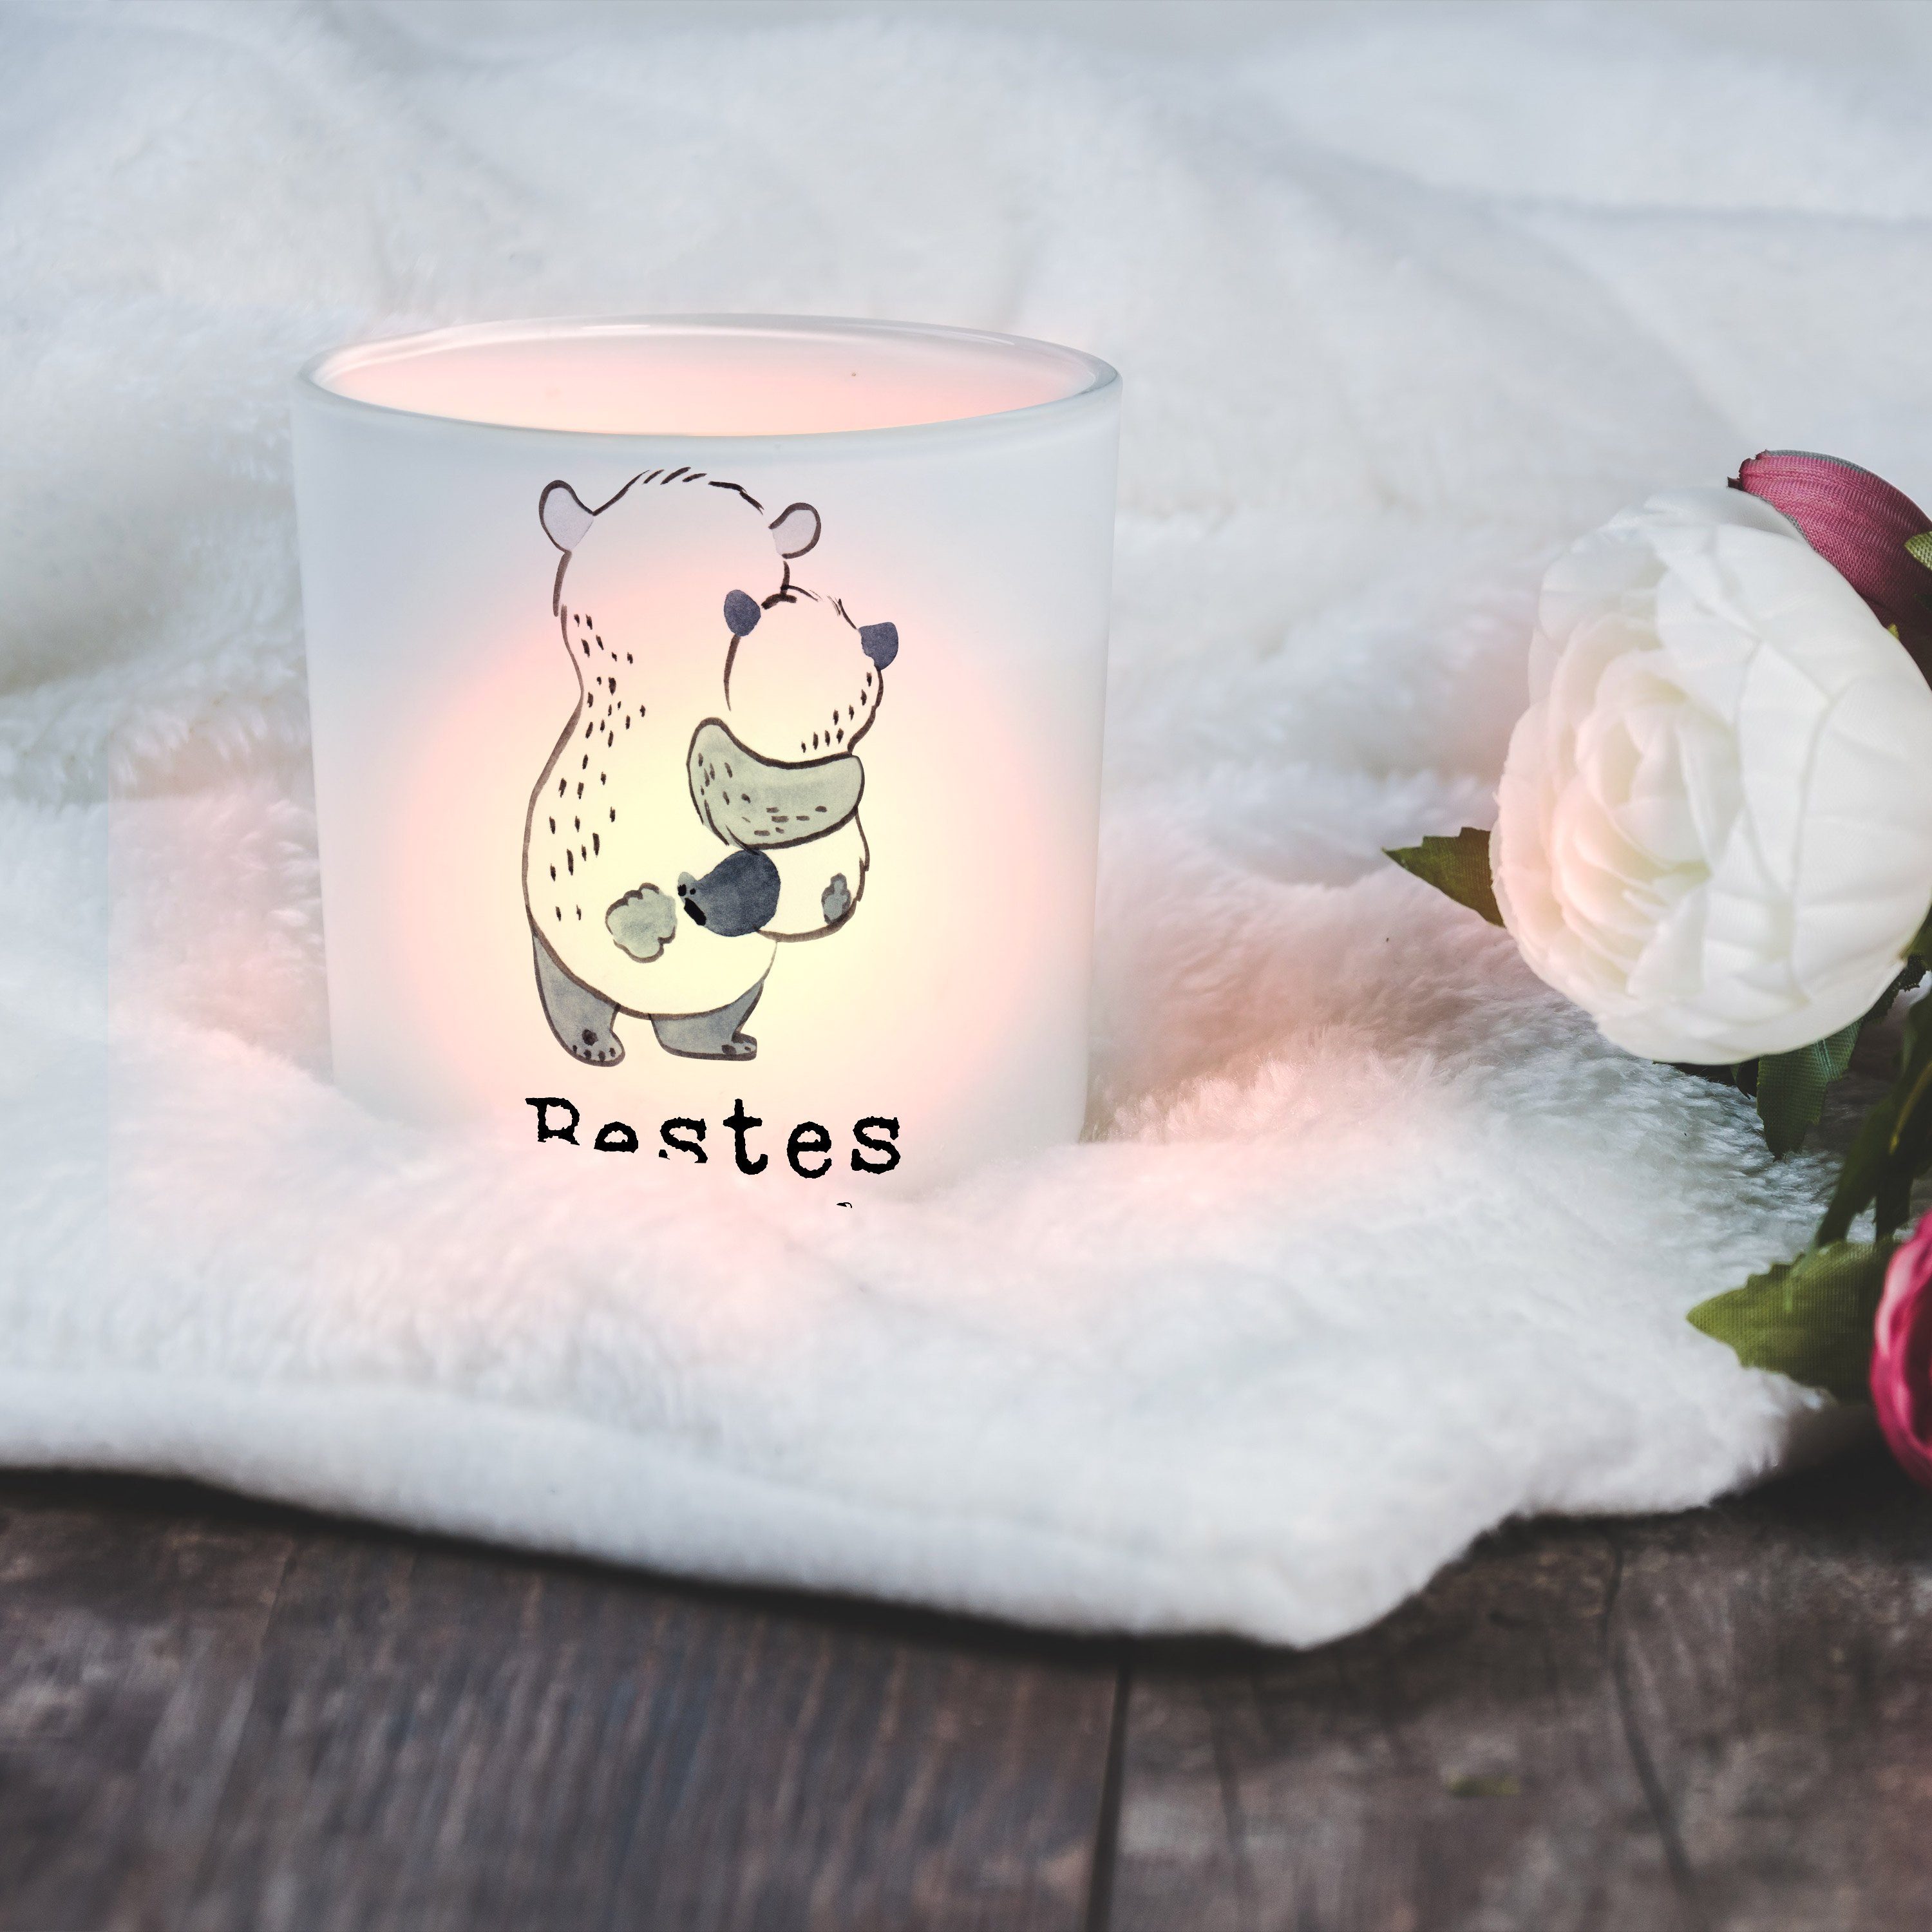 Mr. & Mrs. Panda - Patenkind Panda St) Windlicht Welt K - Bestes Geschenk, Bedanken, Transparent der (1